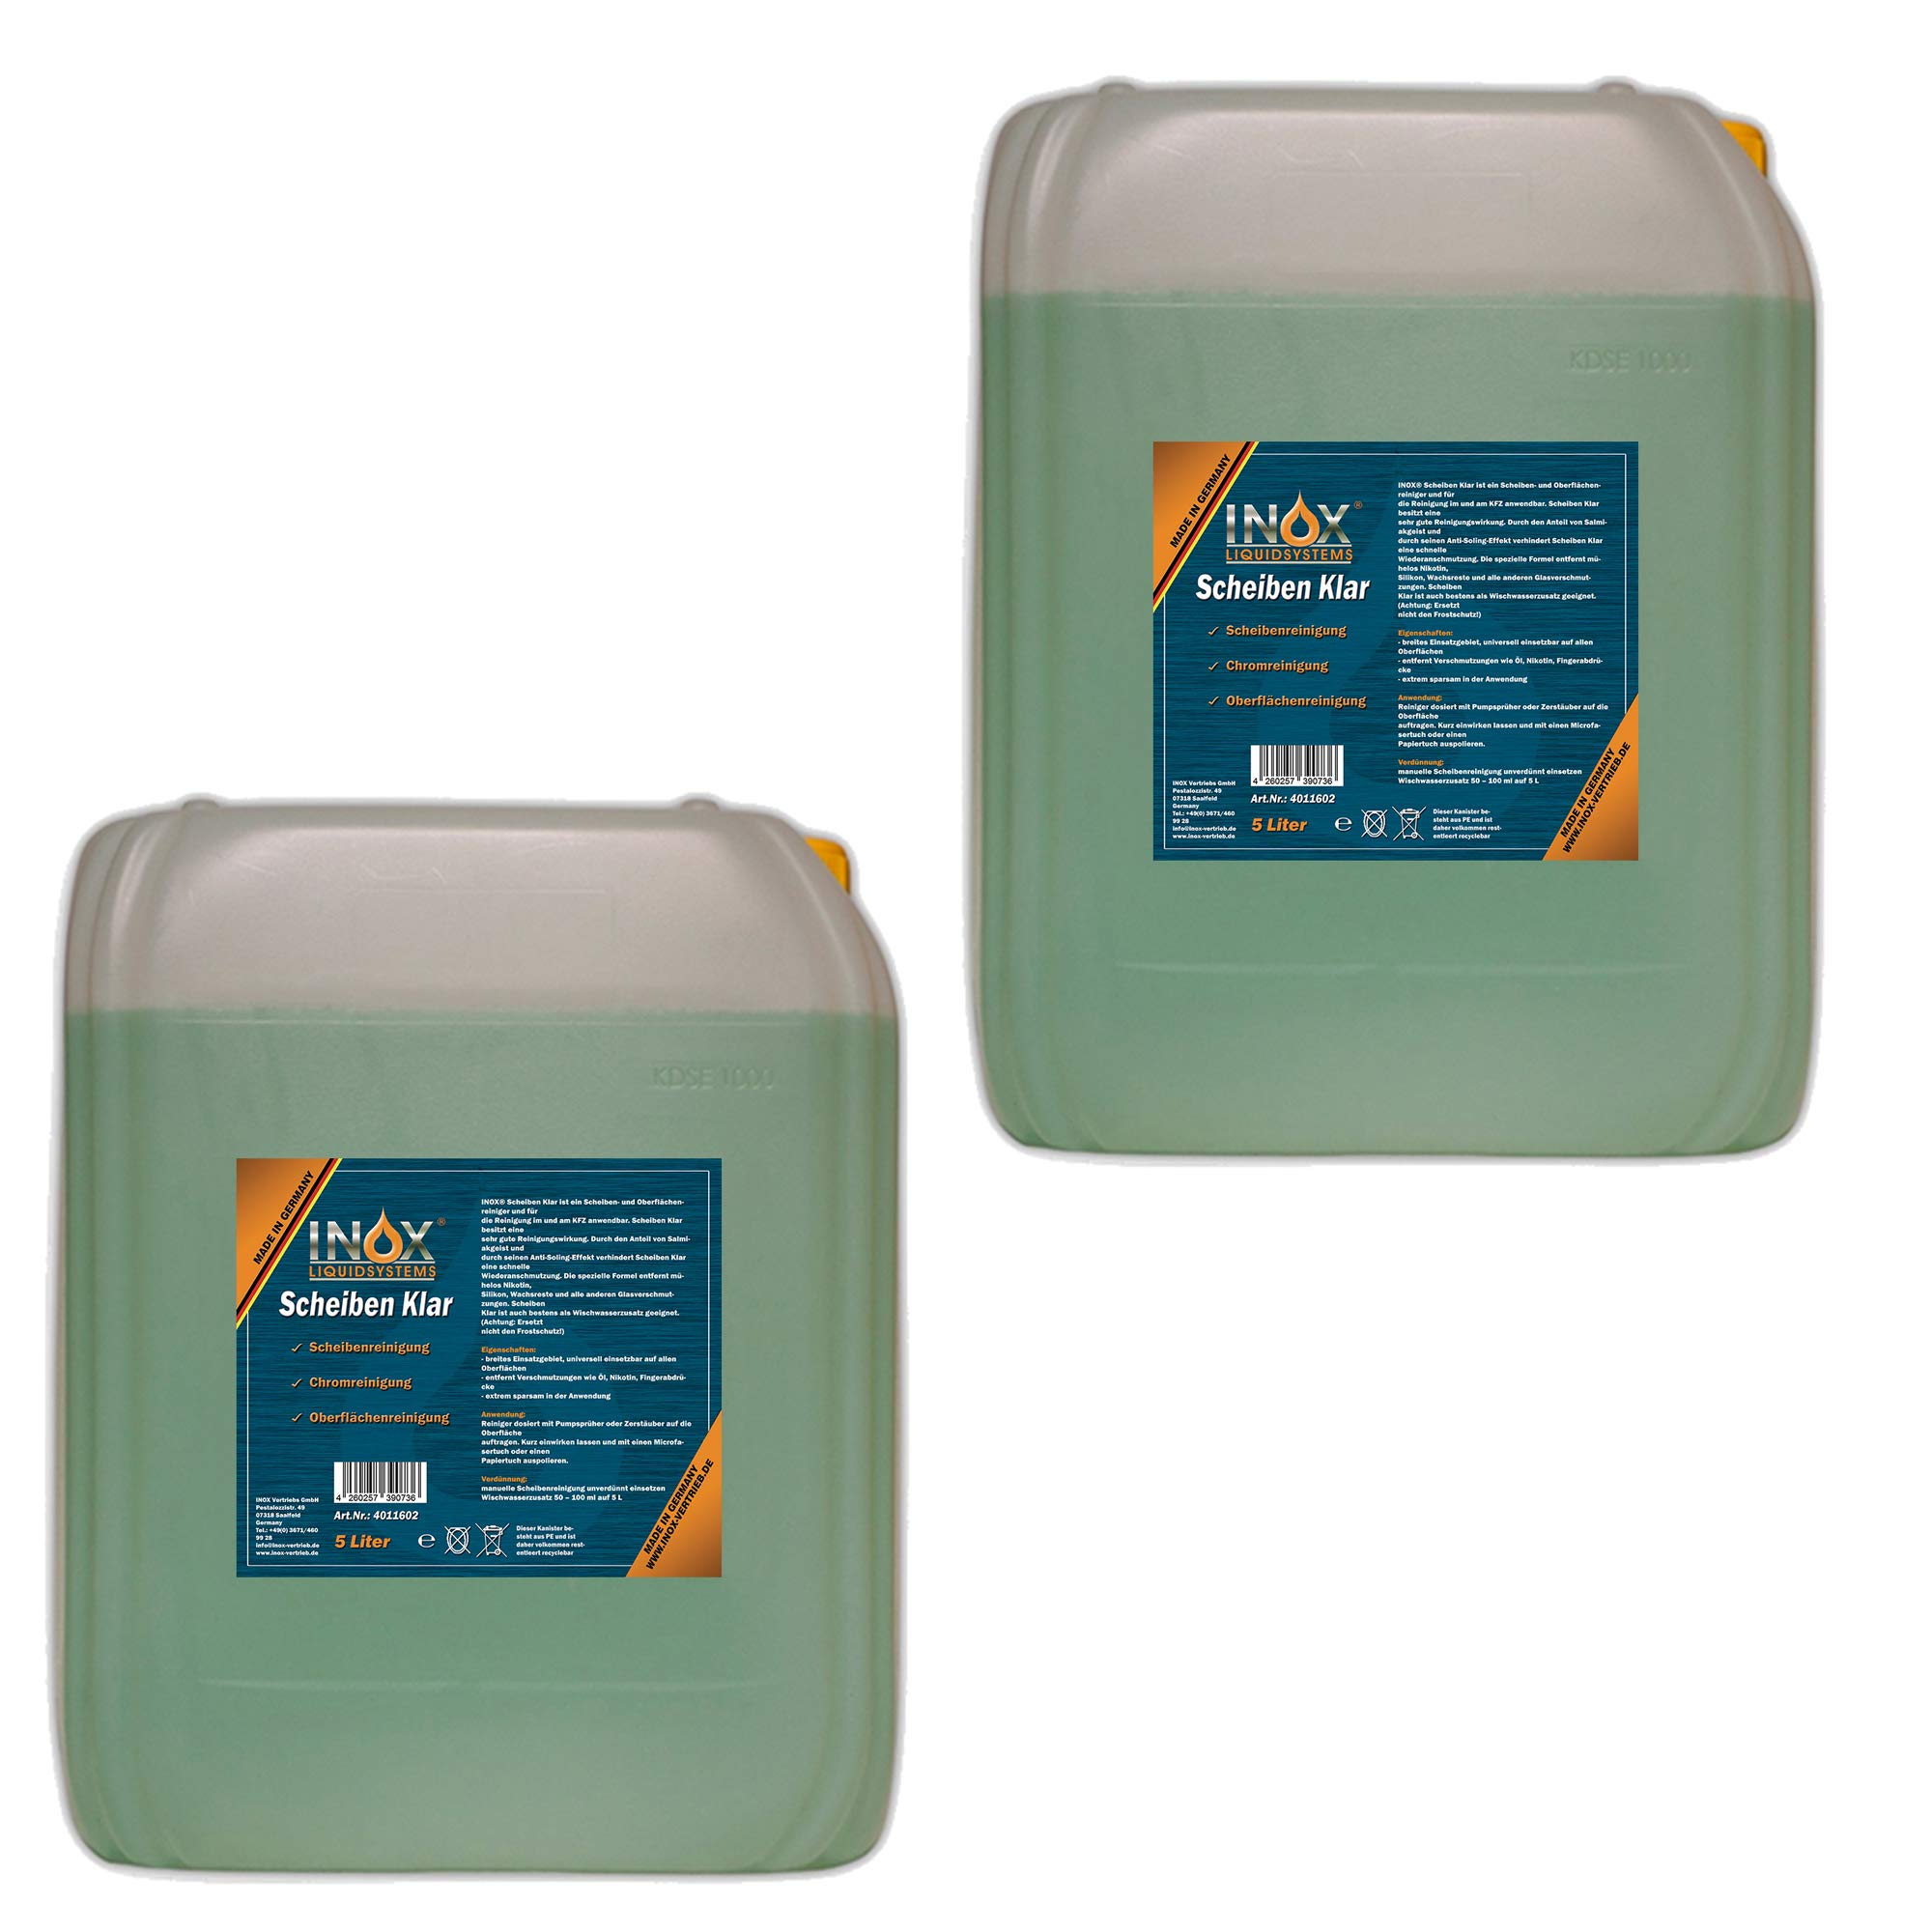 INOX® Scheiben Klar Scheibenreiniger Konzentrat, 2 x 5L - Glasreiniger für Autoscheiben